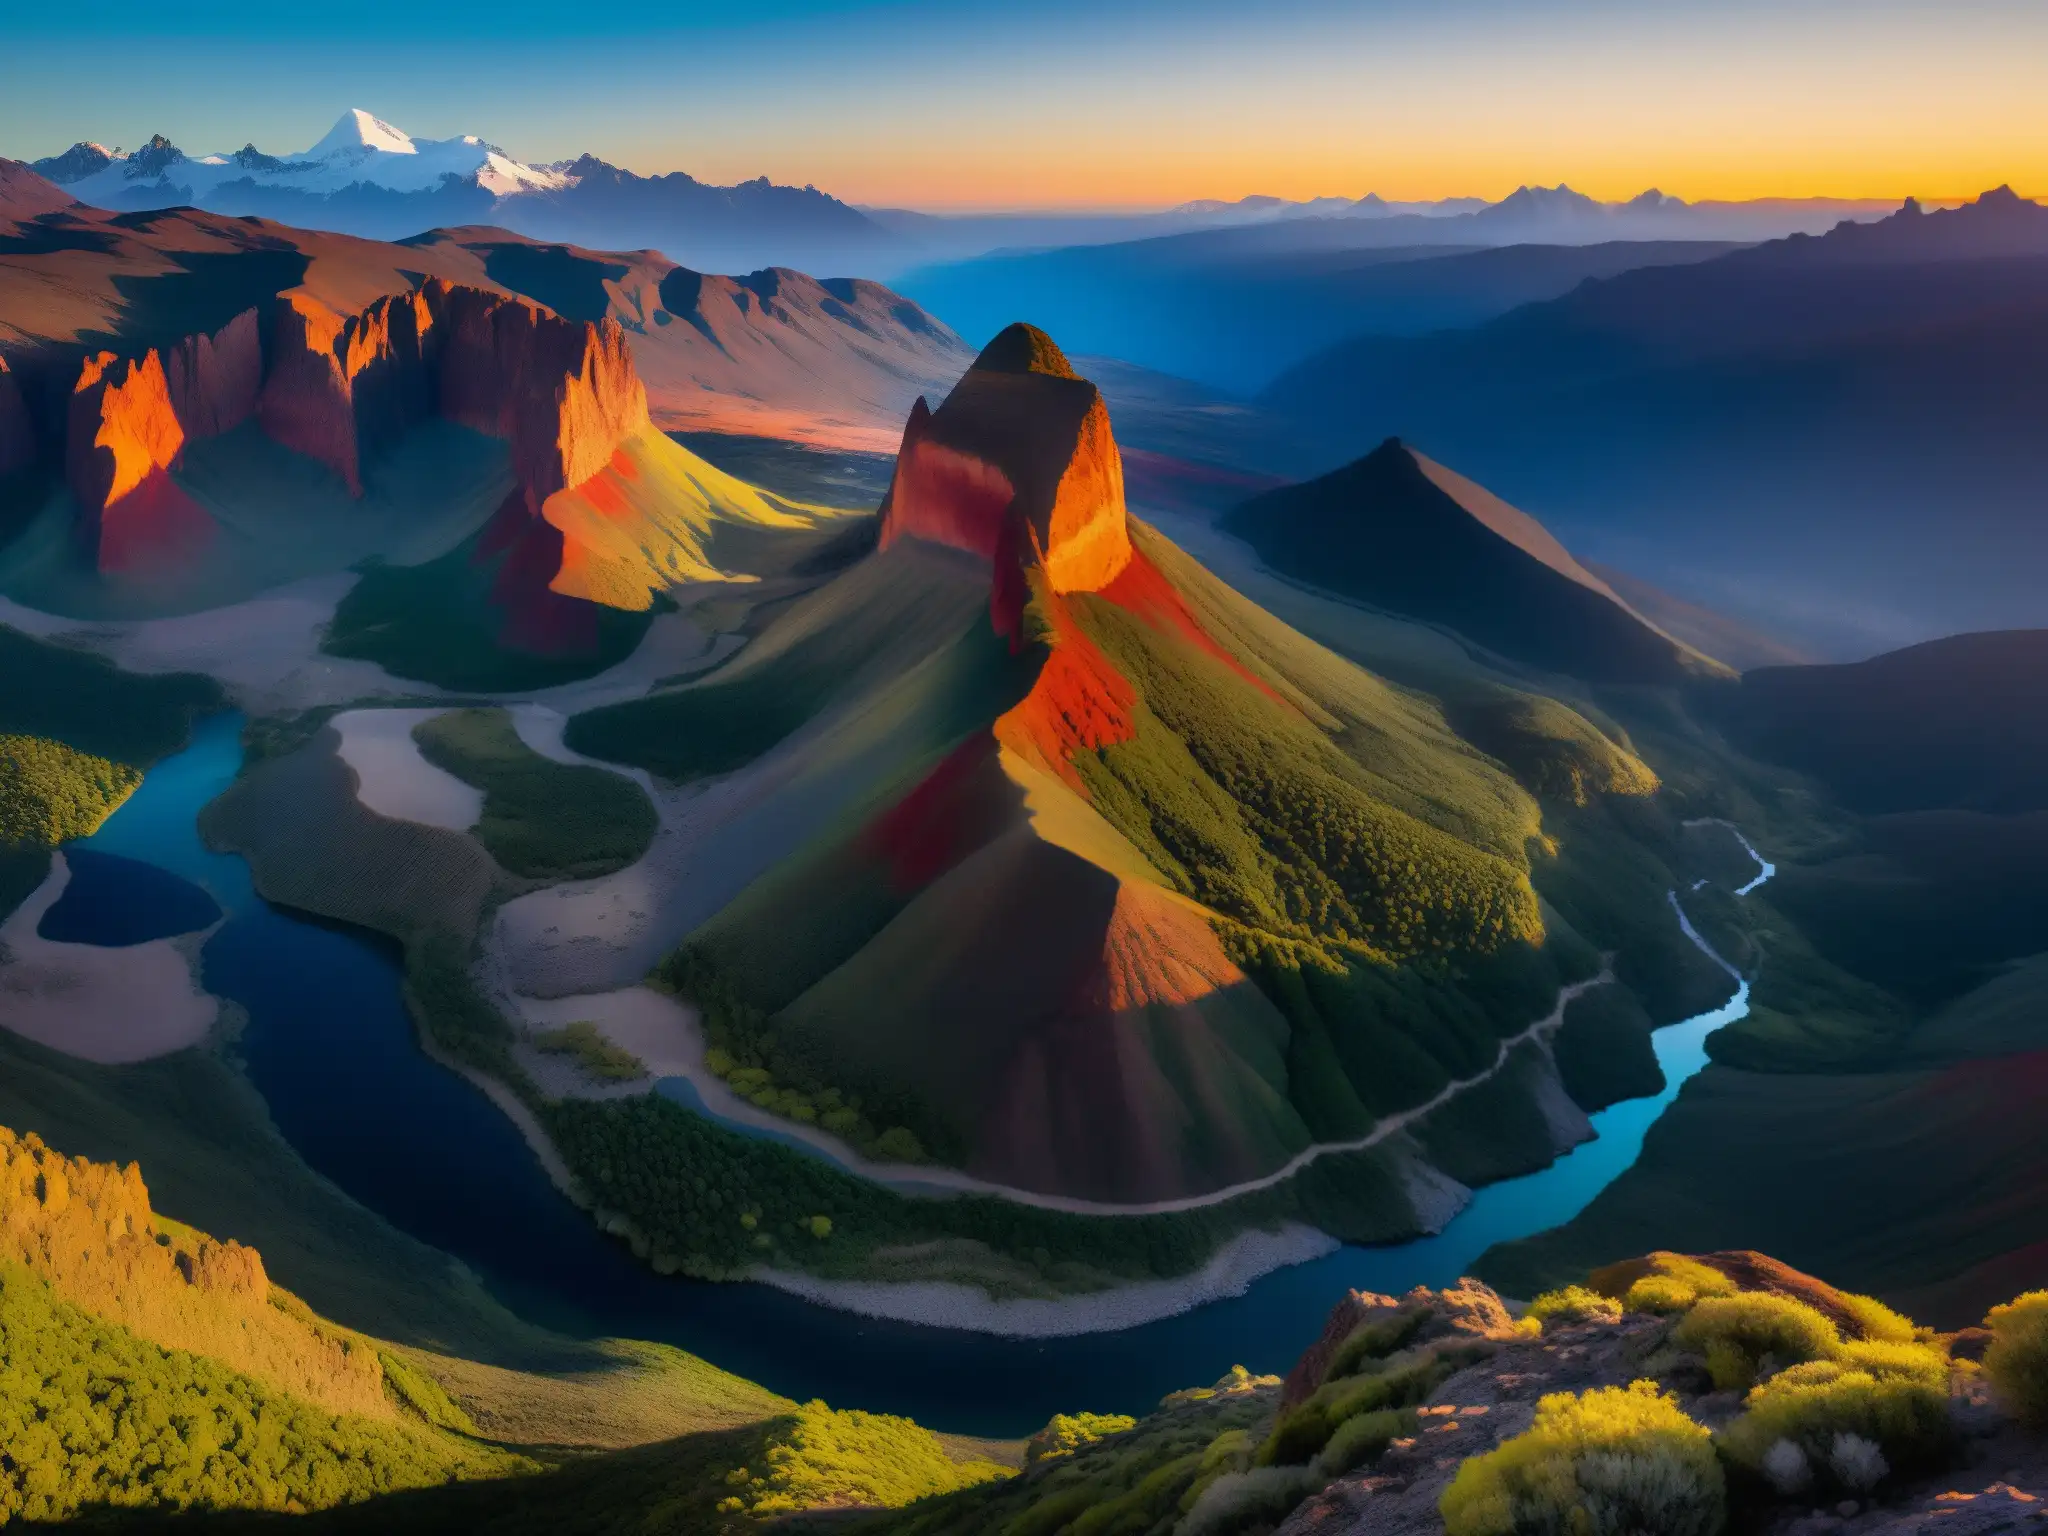 Portal místico Peña Horadada Chile: Majestuosa formación rocosa iluminada por el sol, rodeada de exuberante naturaleza